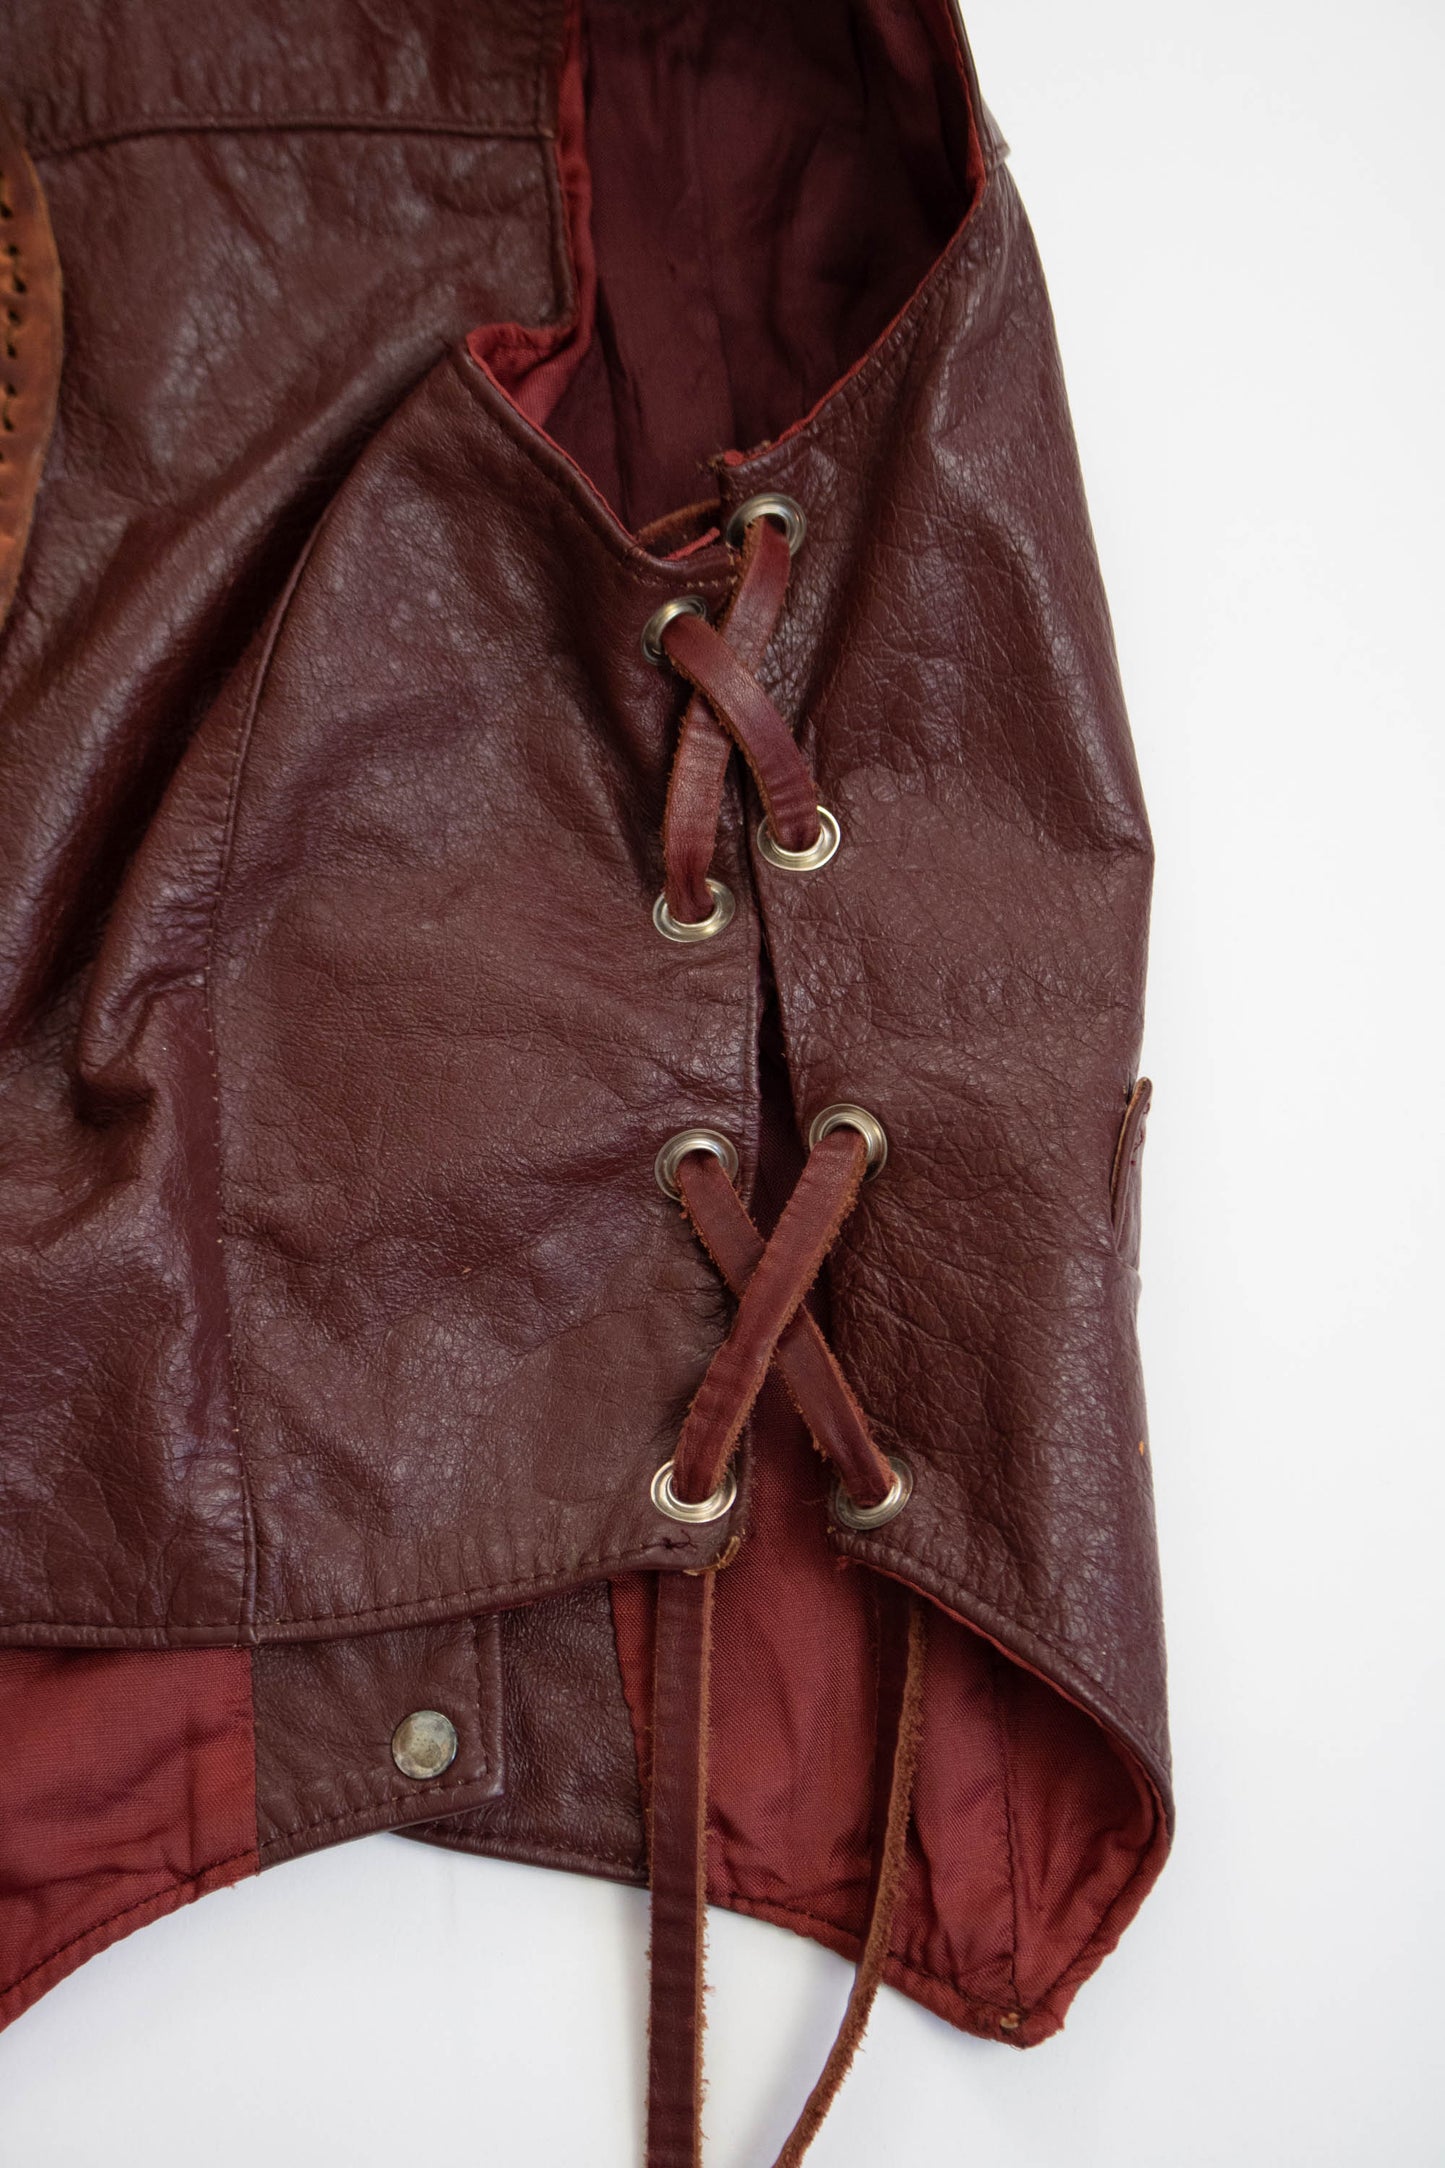 Vintage 1970s Lace Up Leather Vest